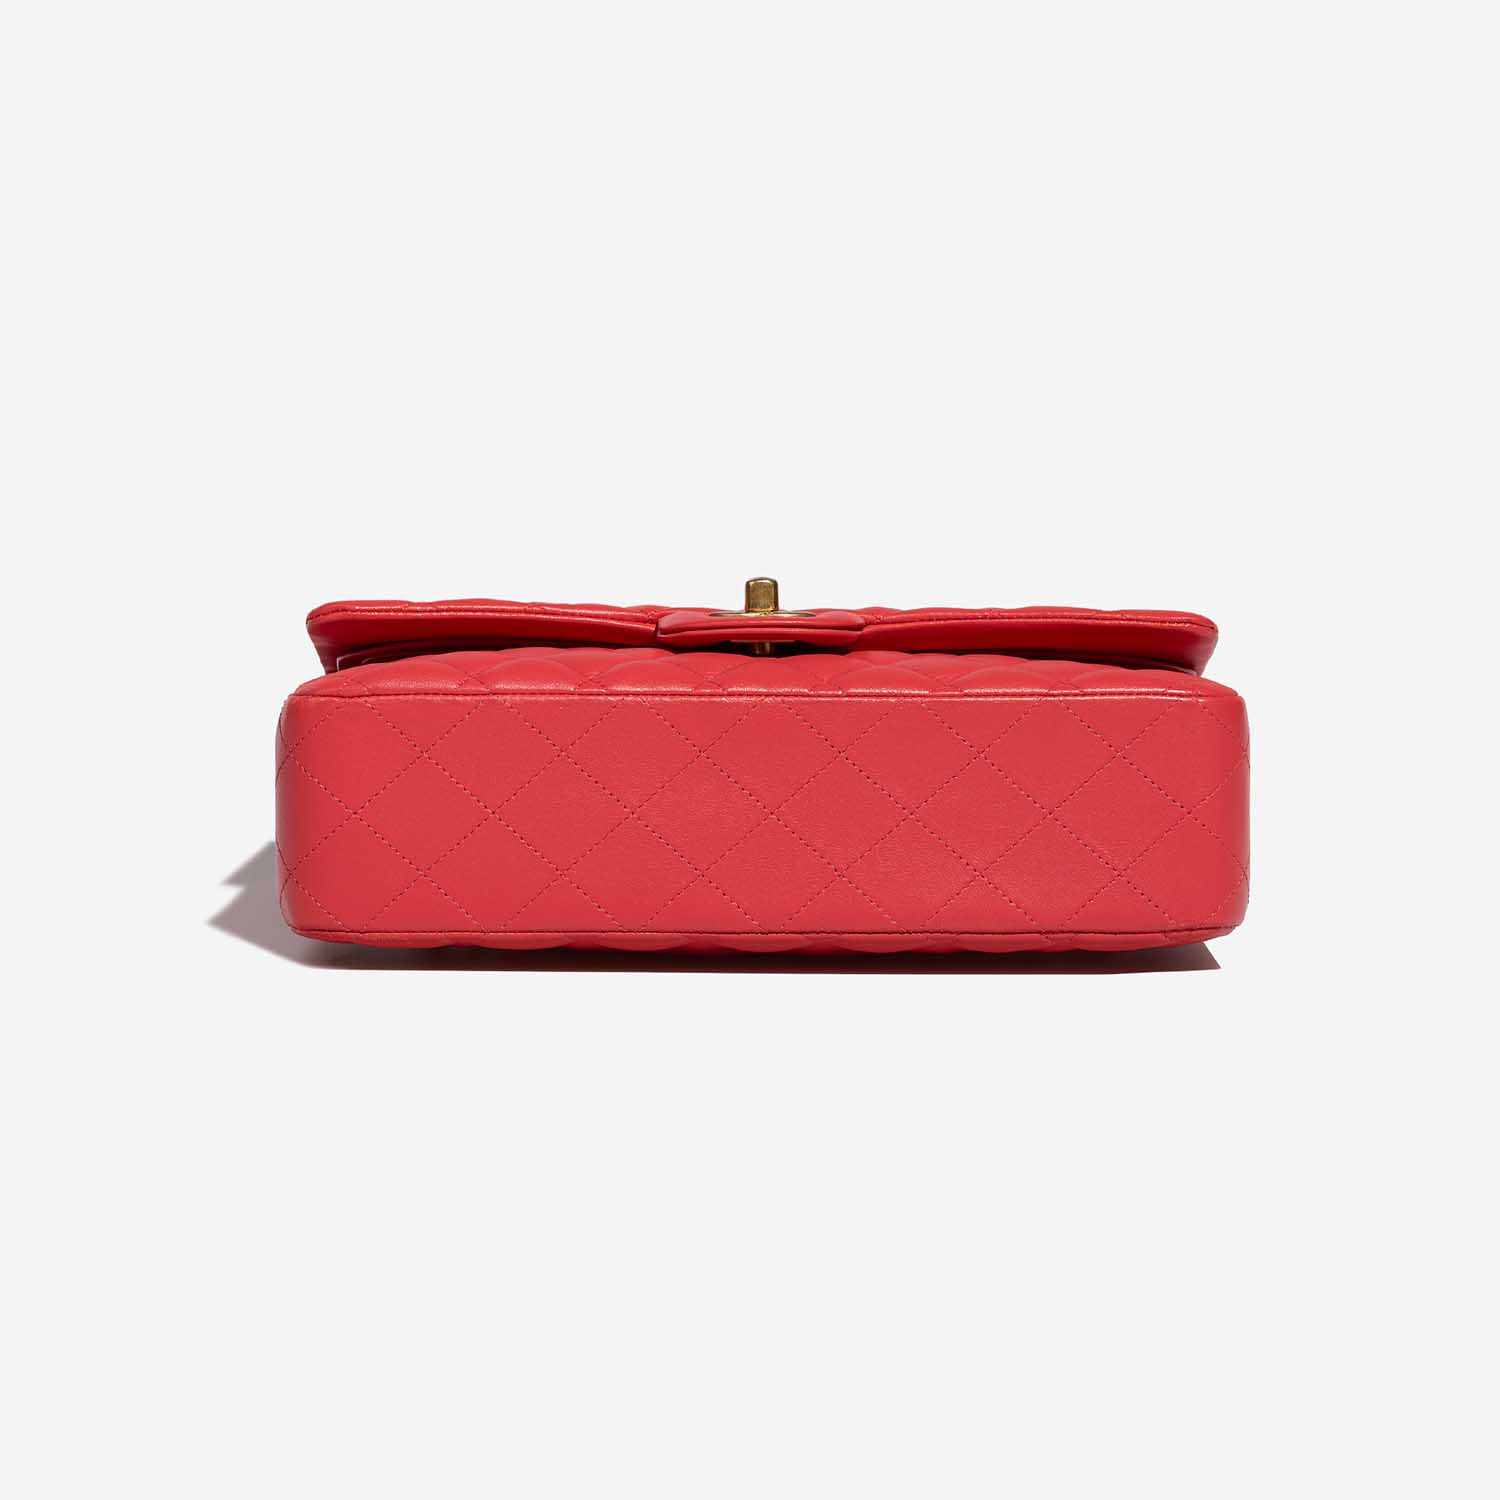 CHanel Timeless Medium Red Bottom | Verkaufen Sie Ihre Designer-Tasche auf Saclab.com